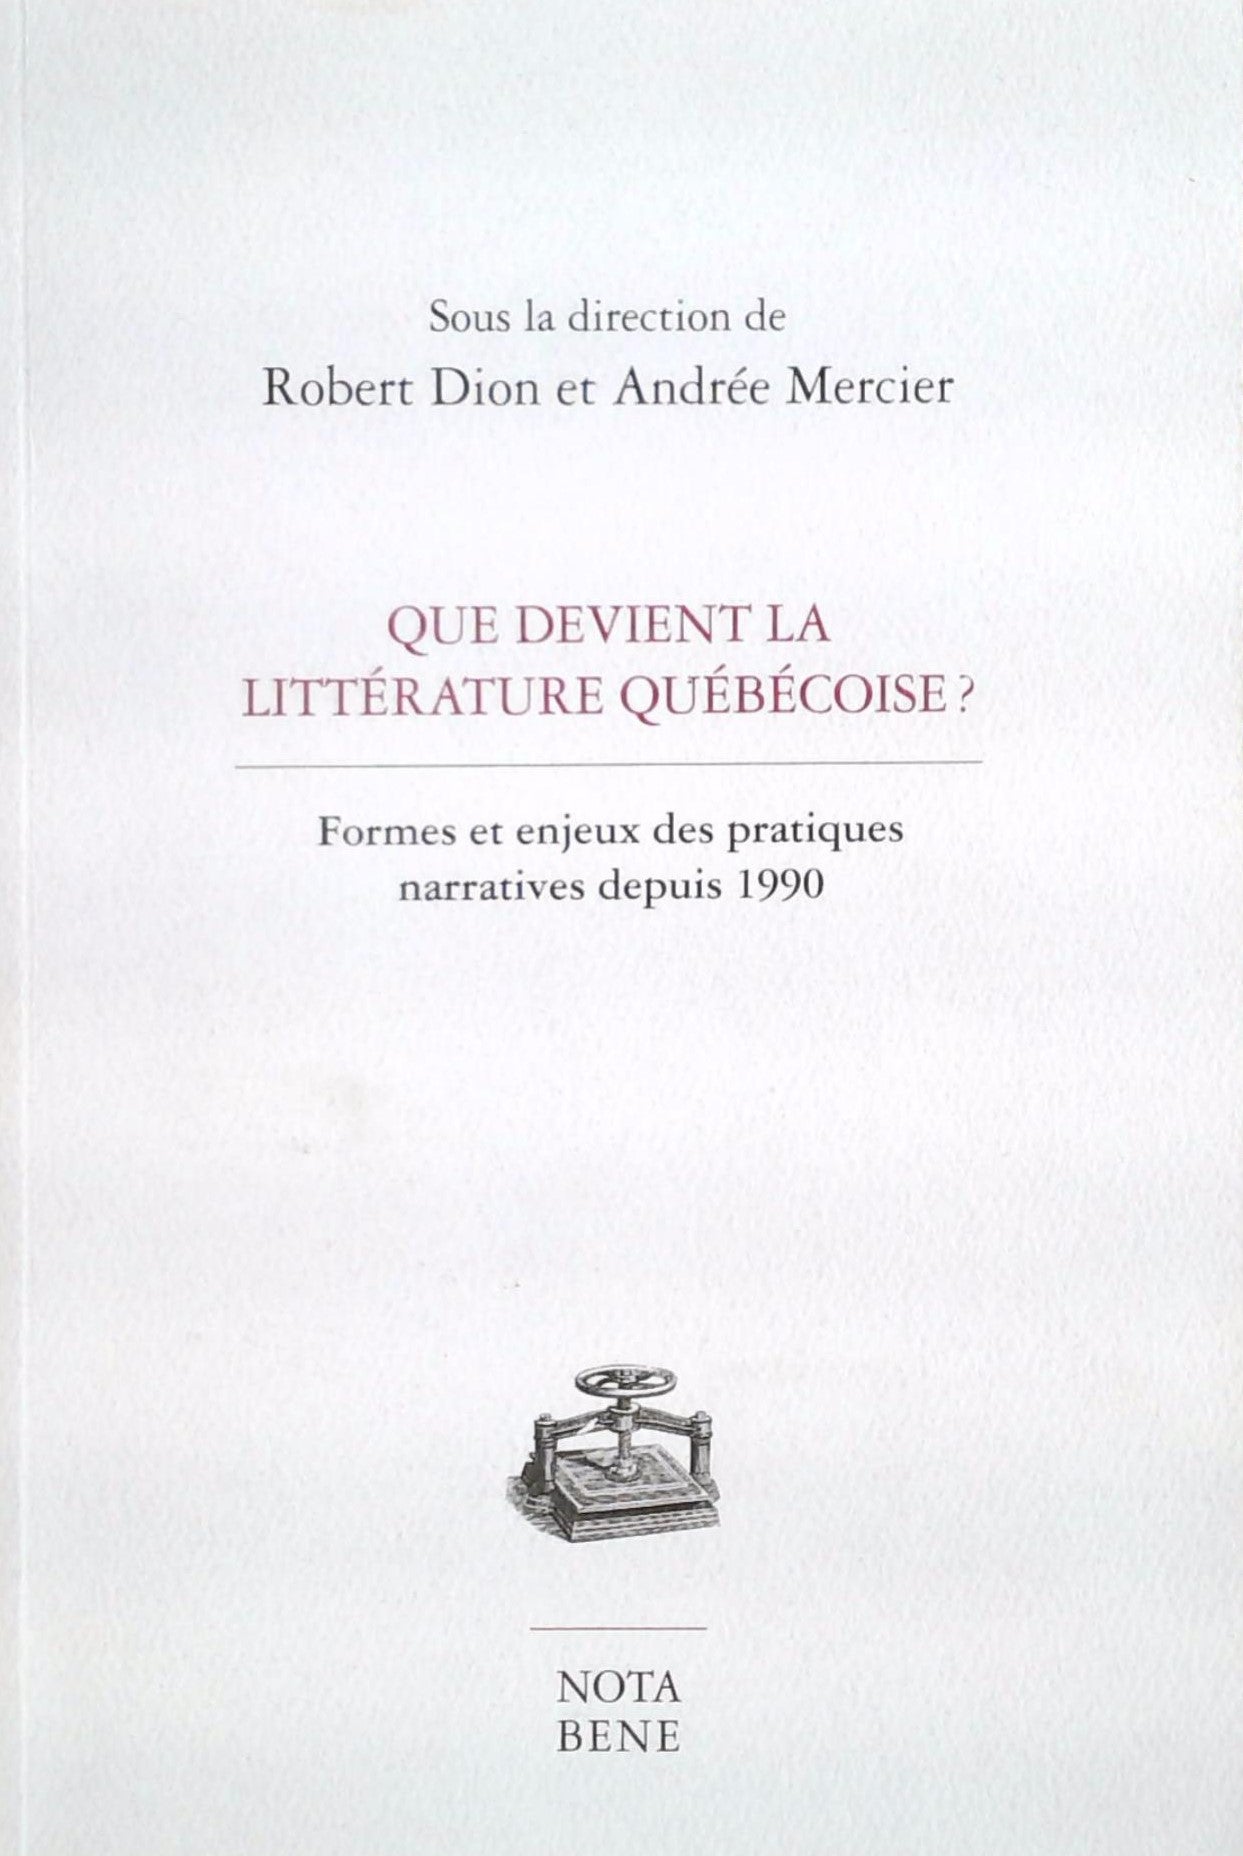 Livre ISBN 2895185387 Que devient la littérature Québécoise? Formes et engeux des pratiquers narratives depuis 1990 (Robert Dion)